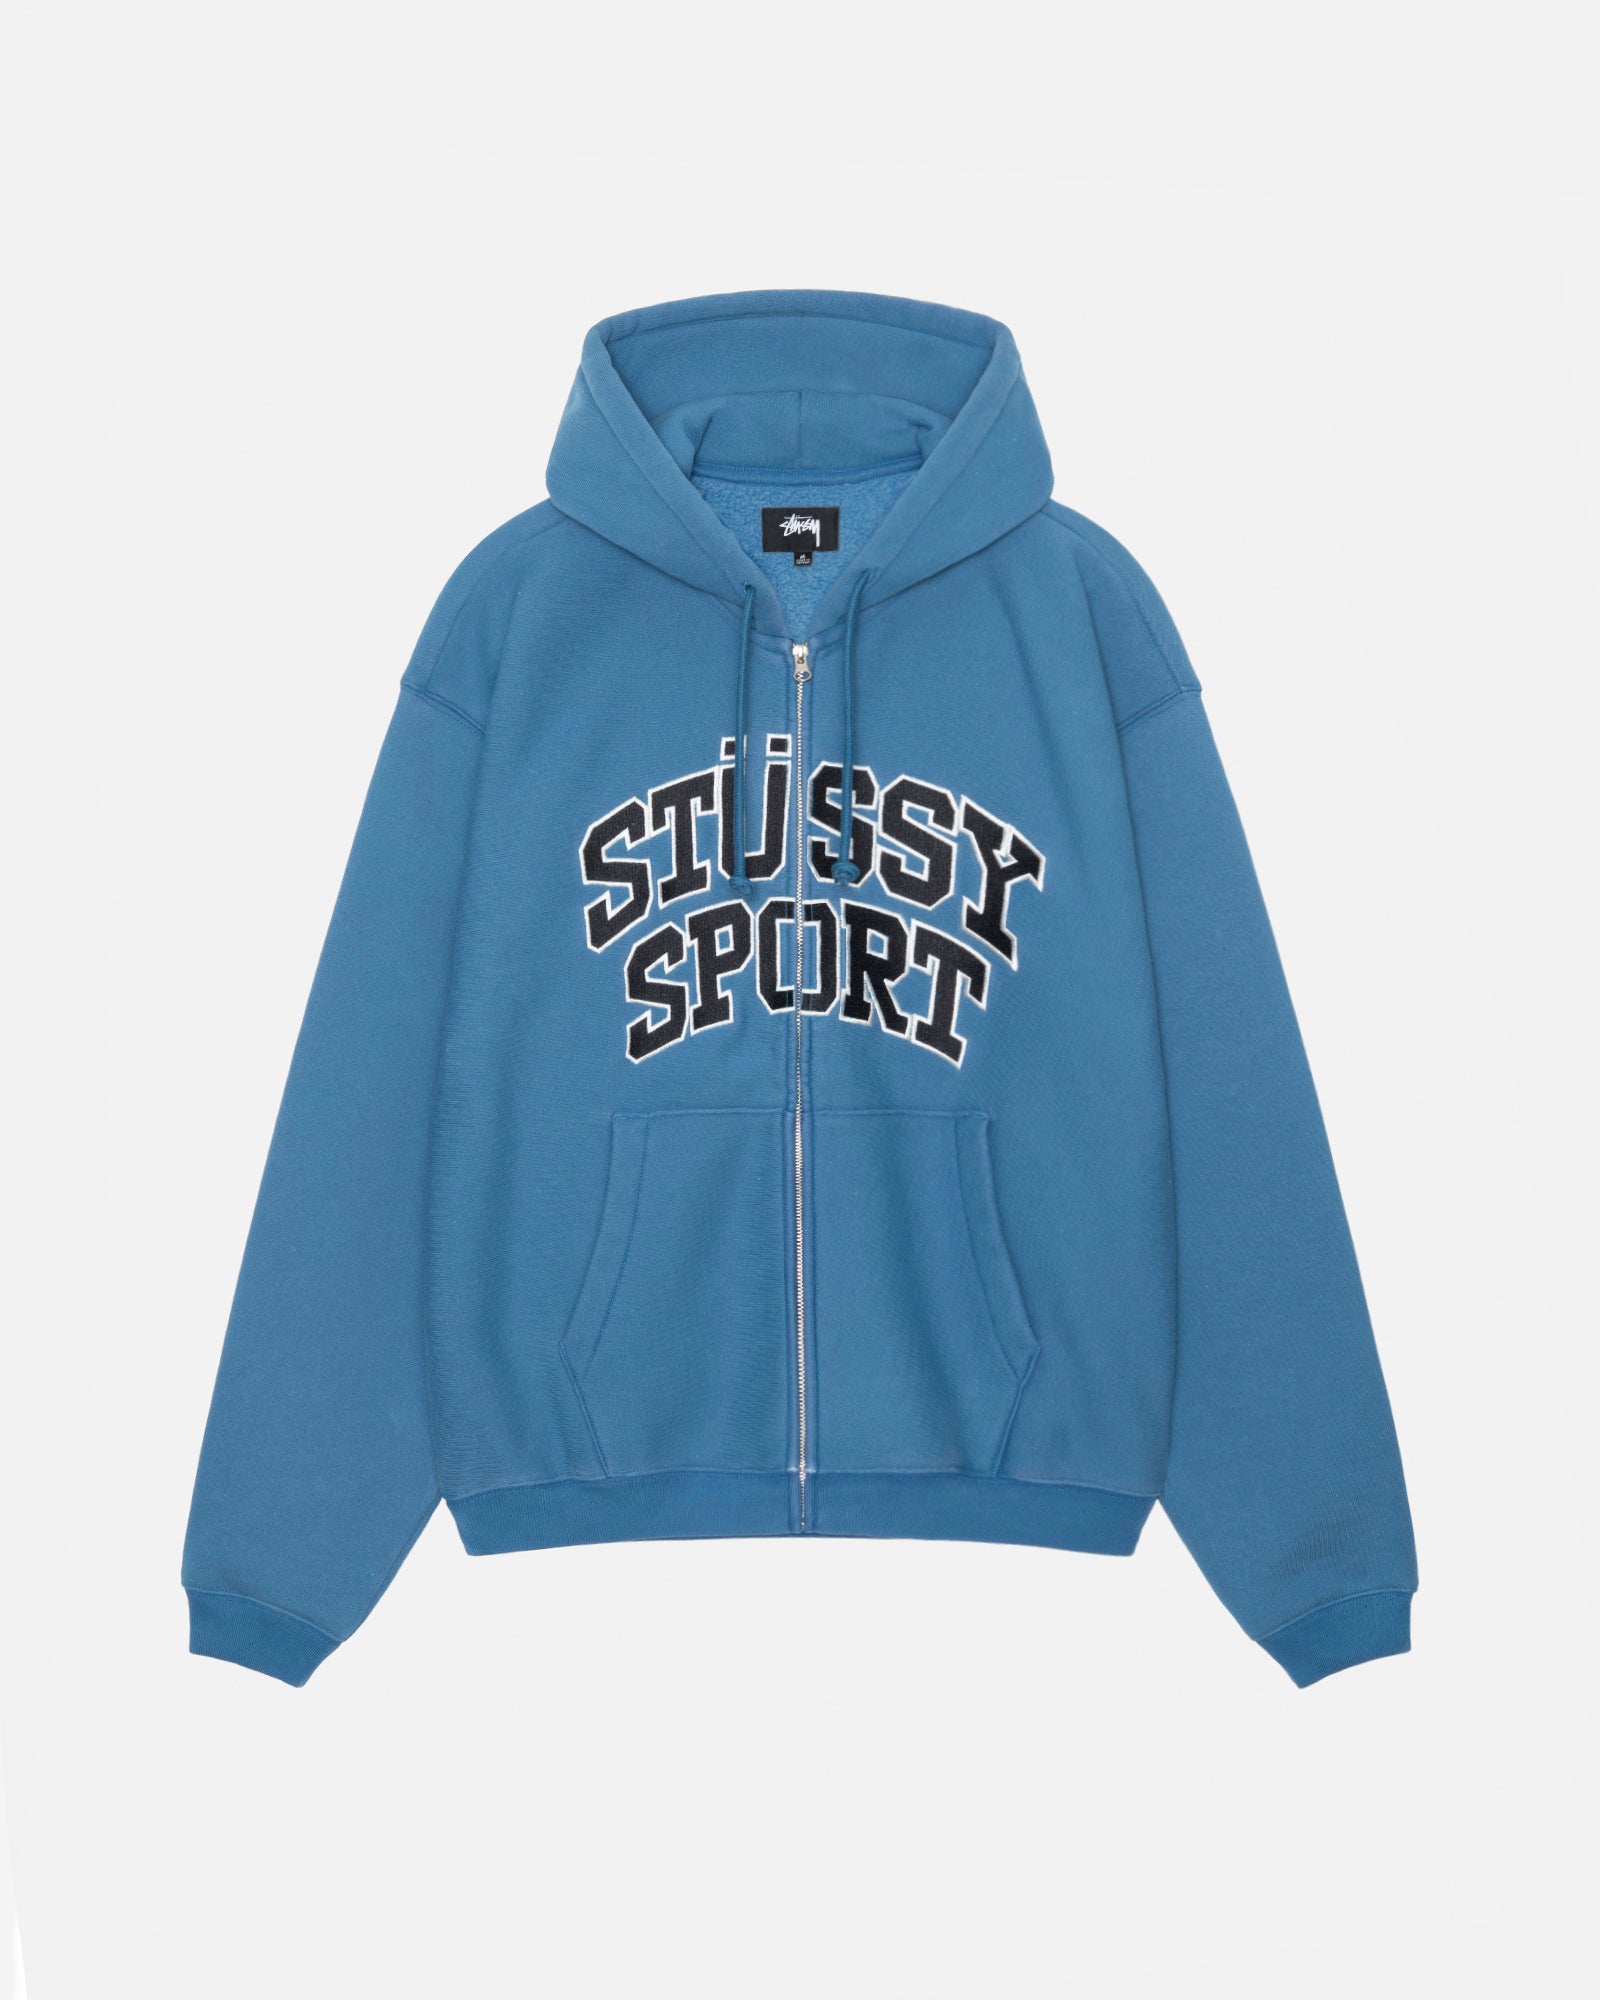 Stüssy Sport Zip Hoodie in blue – Stüssy